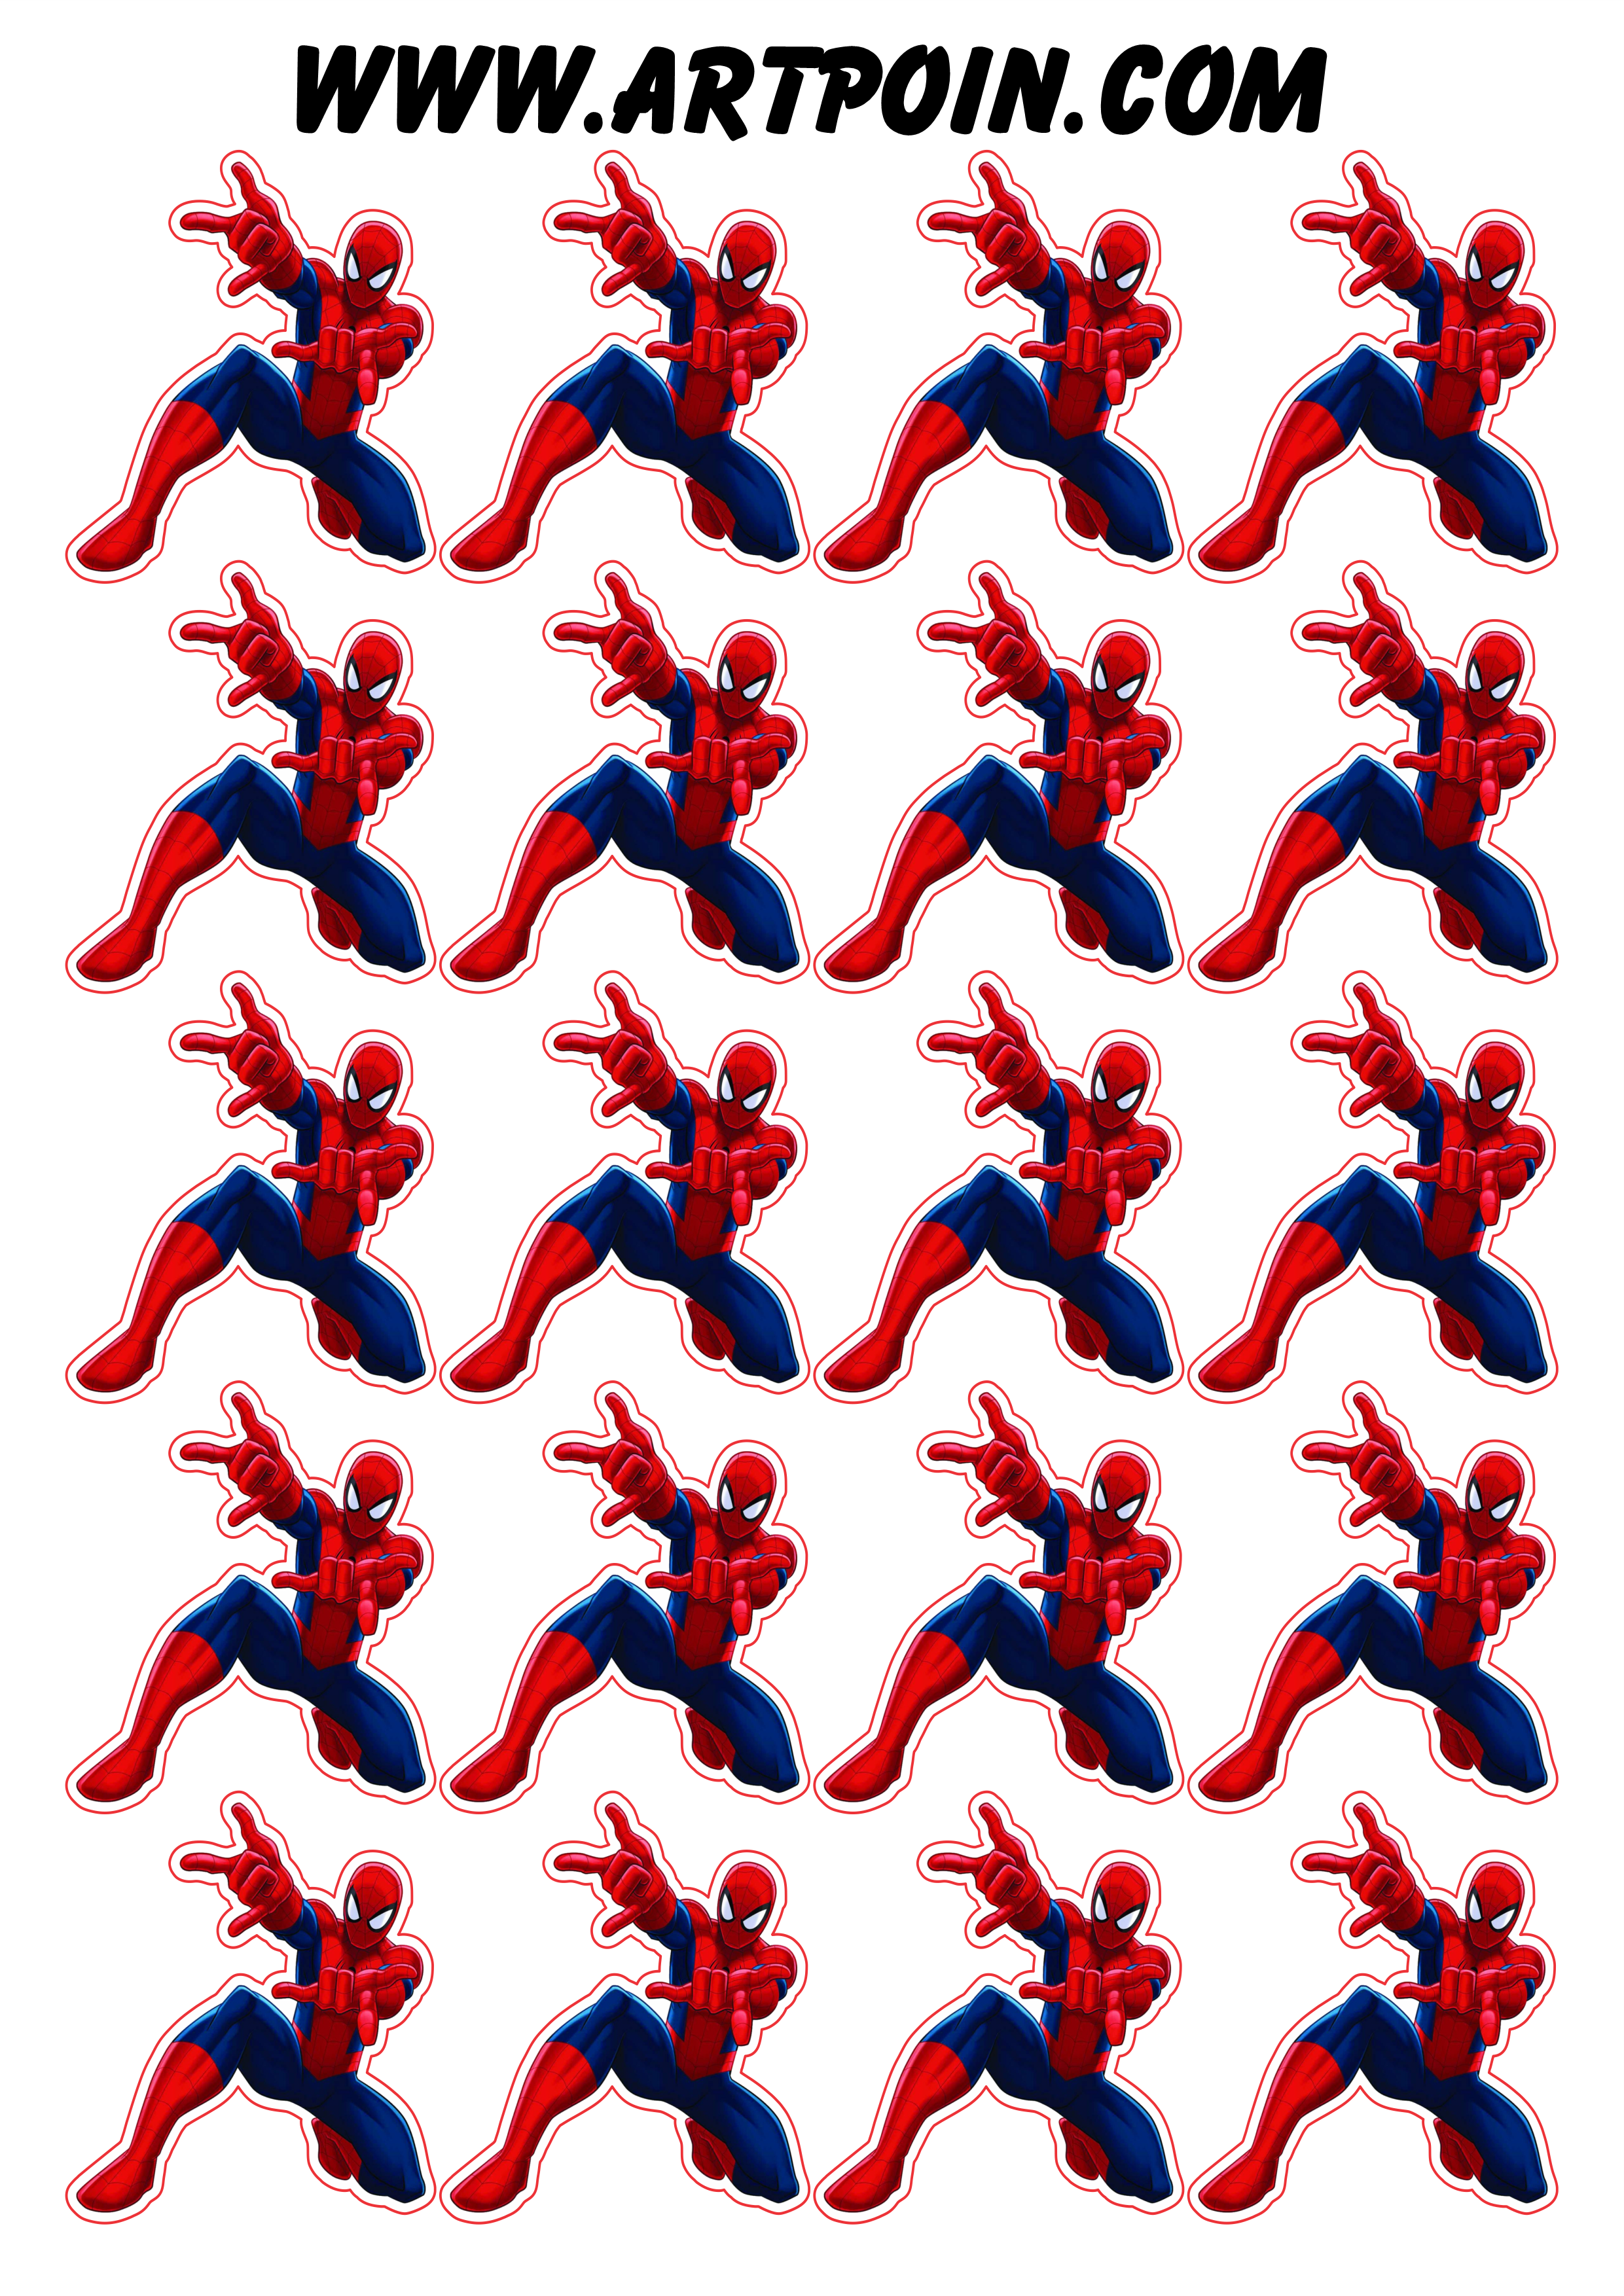 Homem aranha ultimate spider-man adesivo tag sticker decoração de festa artigos de papelaria cupcake png